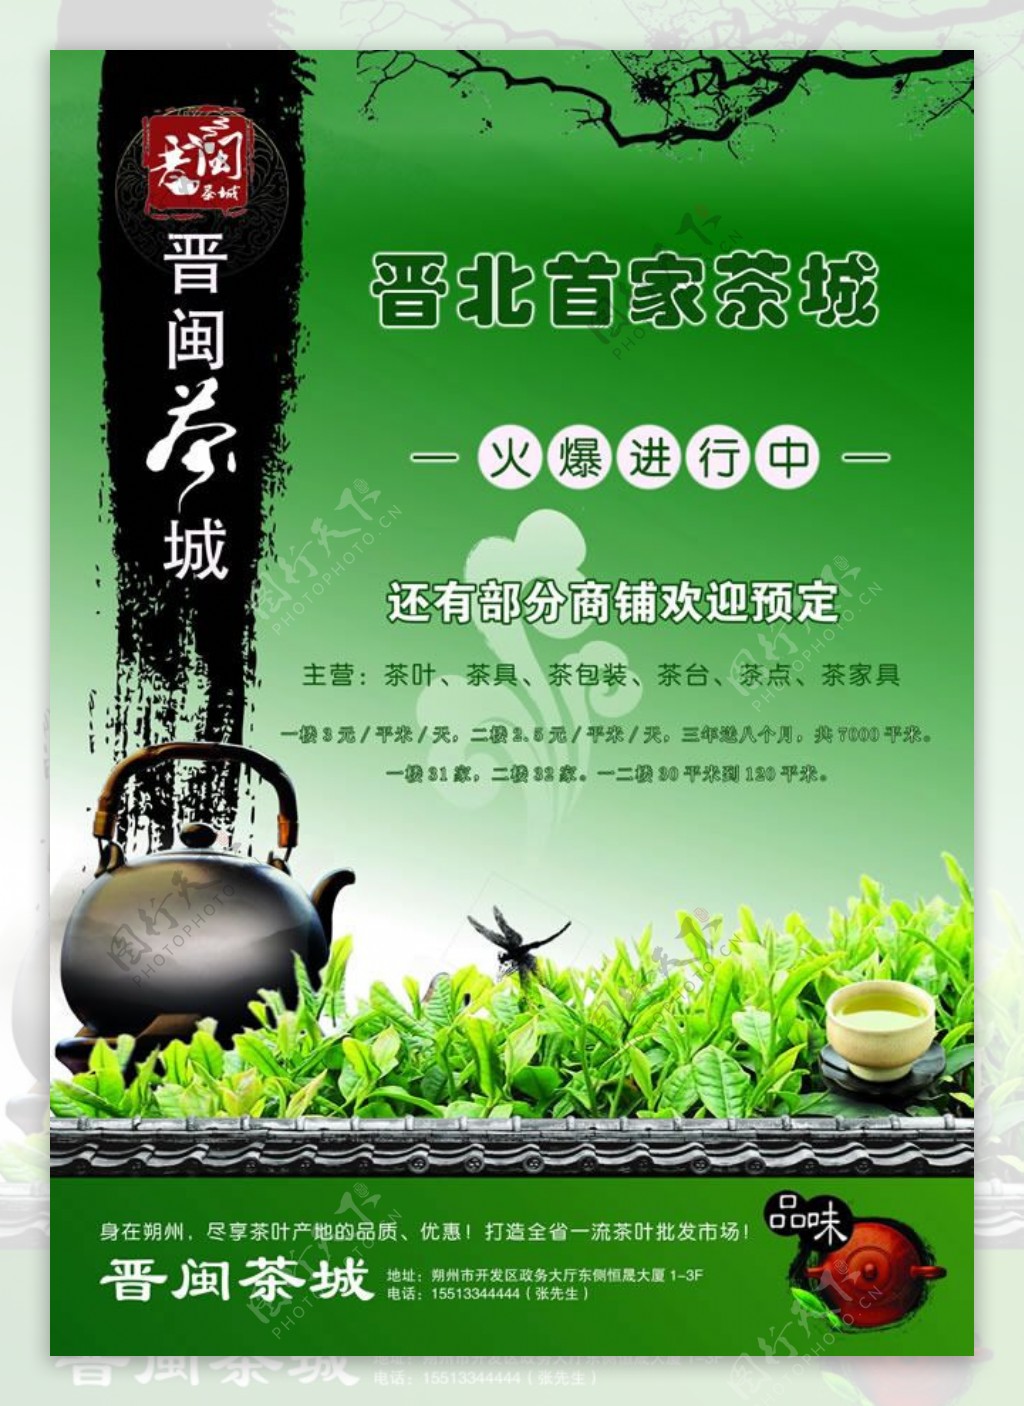 茶城招商宣传单设计psd素材